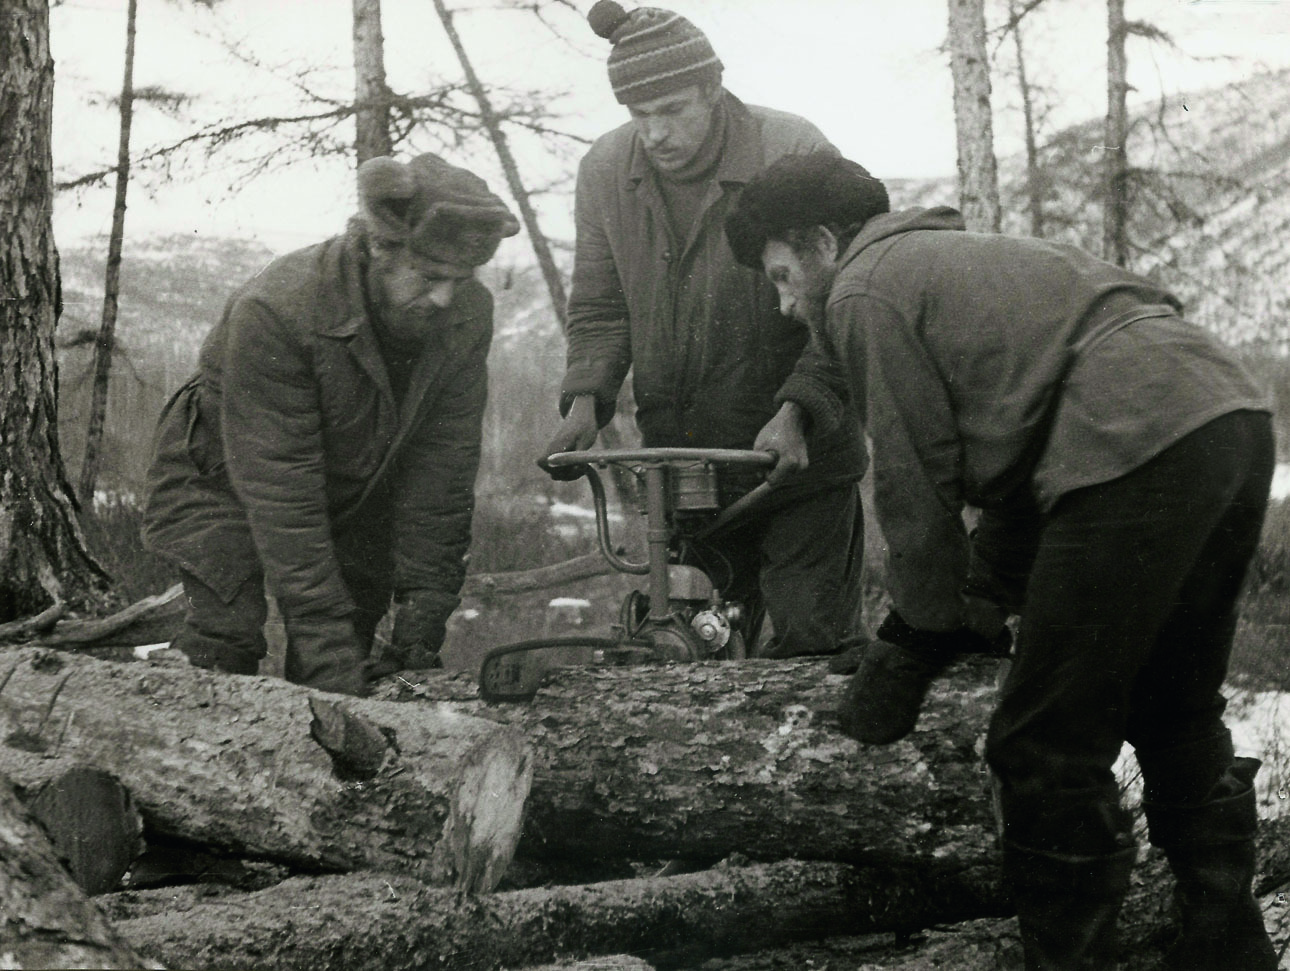 Изображение Заготовка дров для лагеря — дело коллективное. Фото автора. 